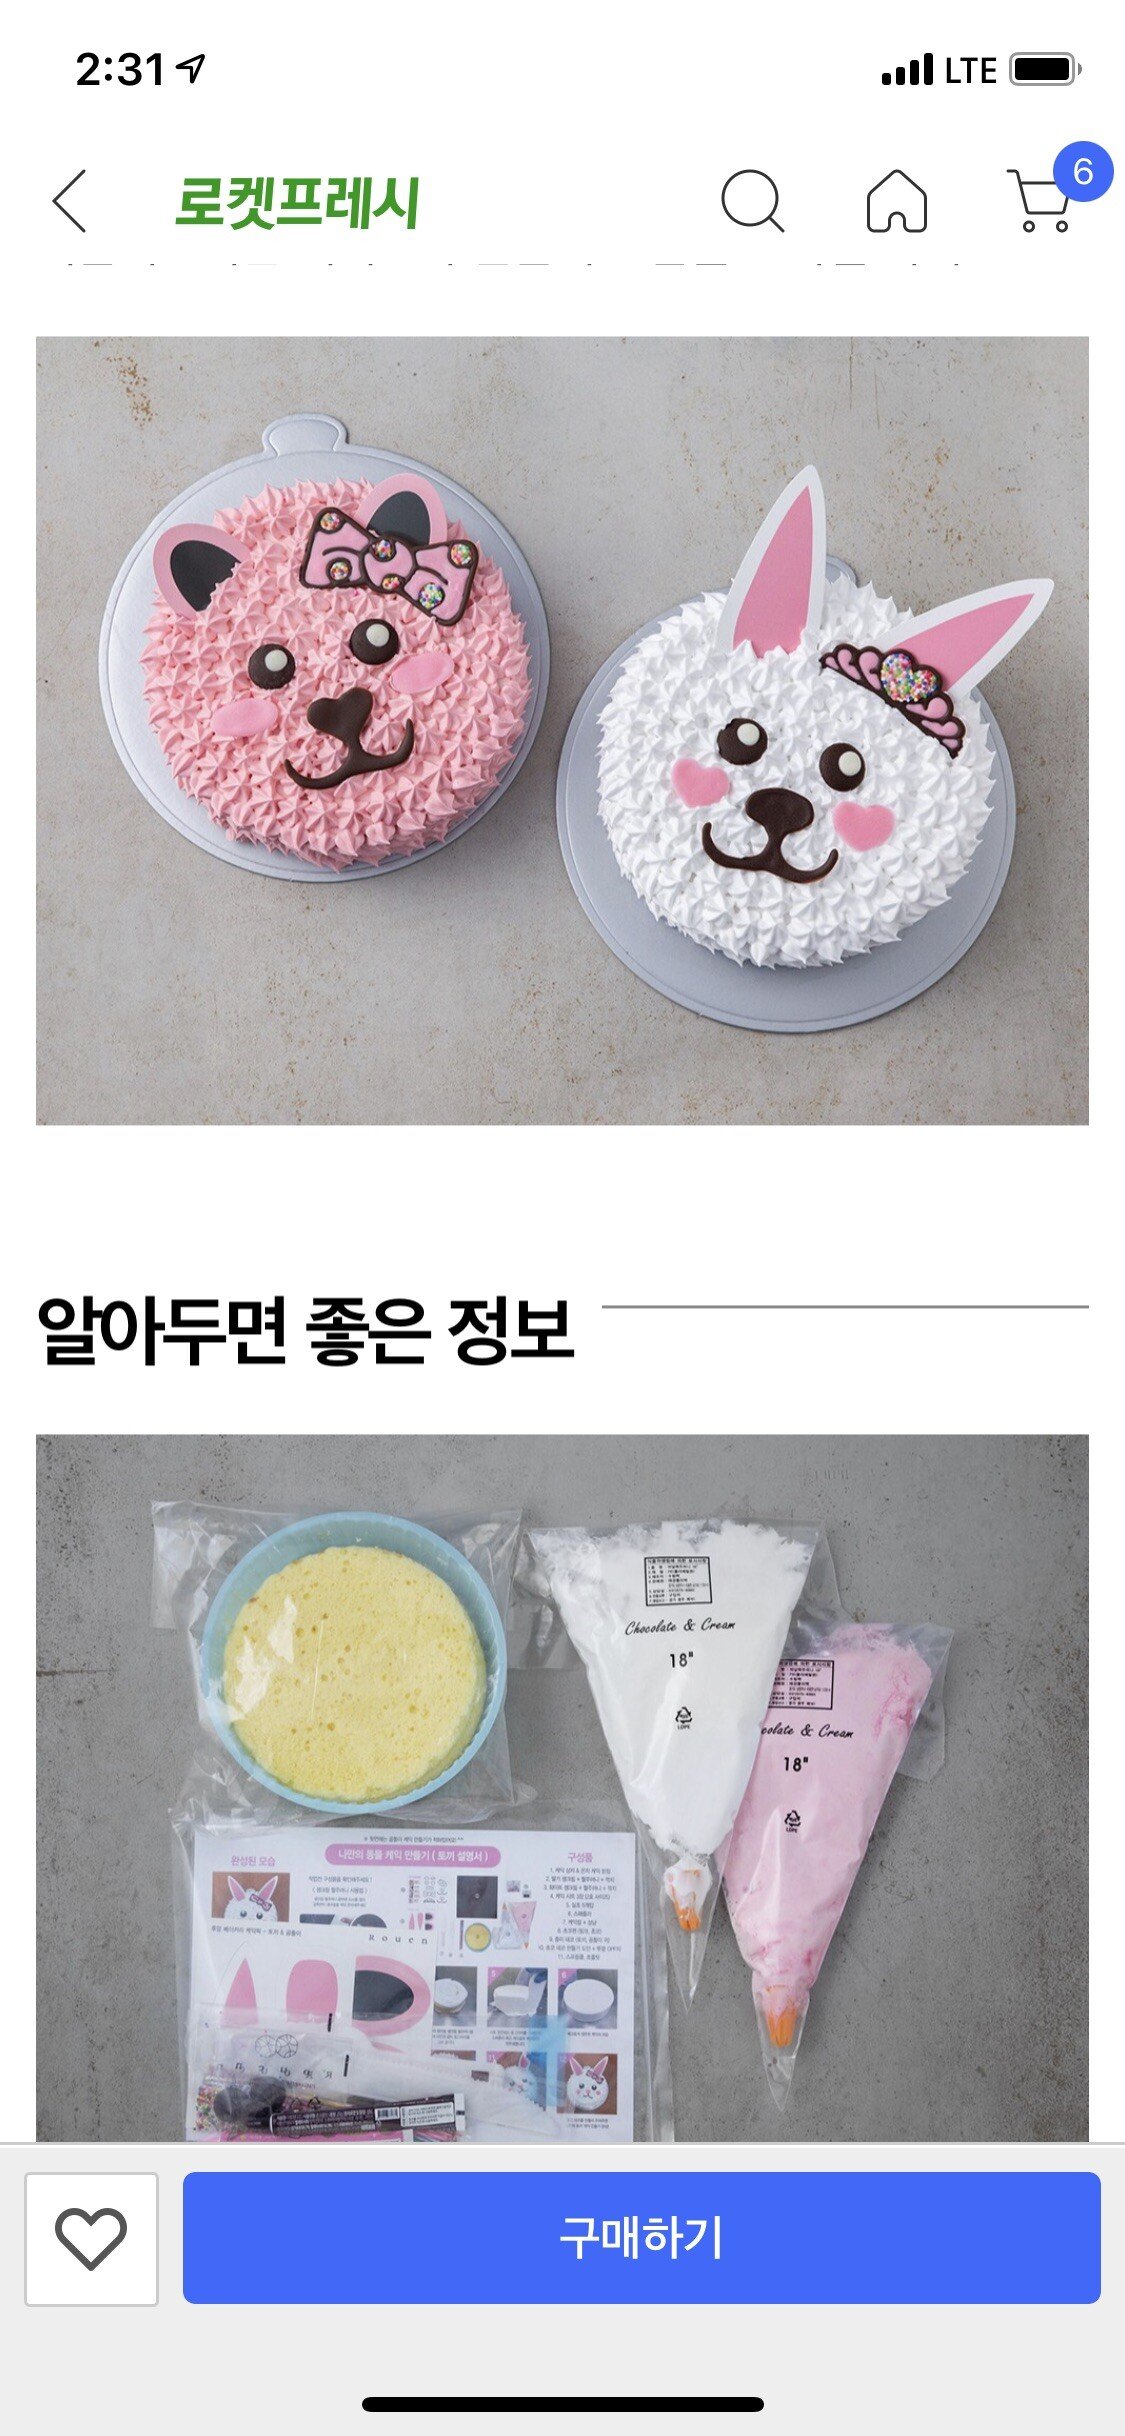 쿠팡에서 판매하는 동물 케이크 만들기 키트.JPG